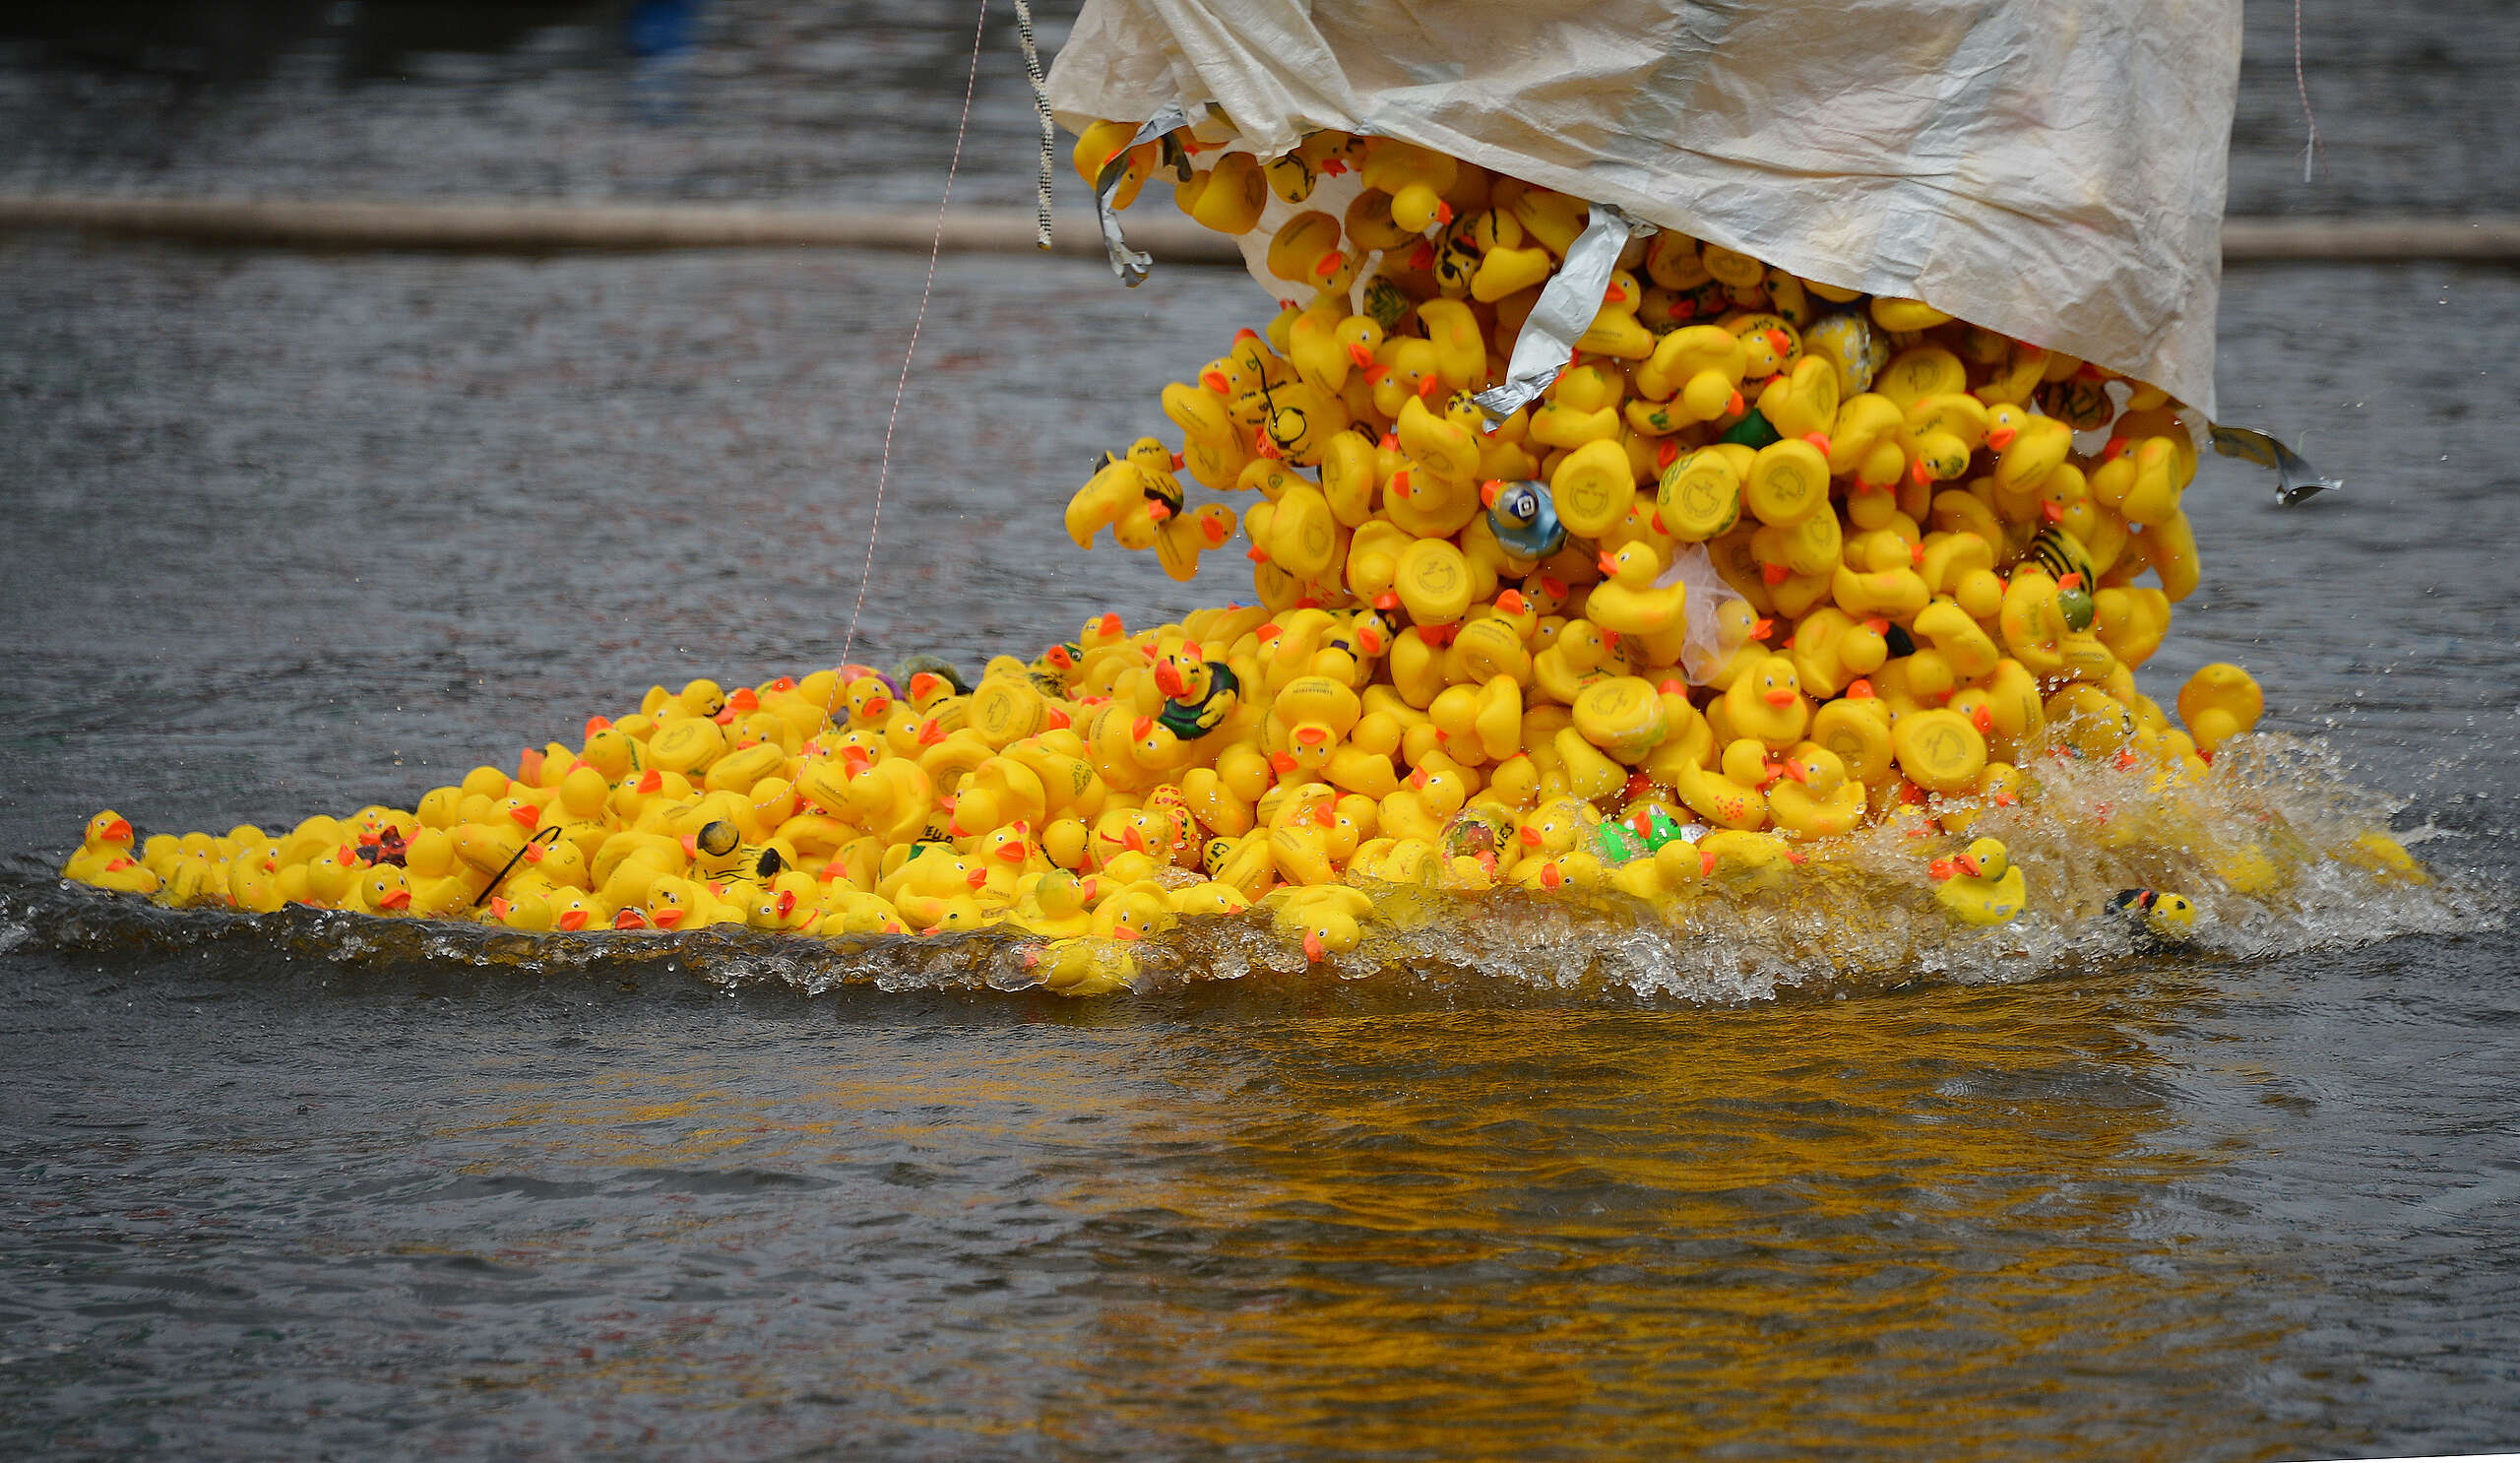 2013年9月1日，德國漢堡舉辦第三屆黃色小鴨比賽，當天超過12,000隻塑膠小黃鴨流放到河中。這次活動預計籌得的 6 萬歐元，收益將全數捐贈當地的兒童醫學中心。